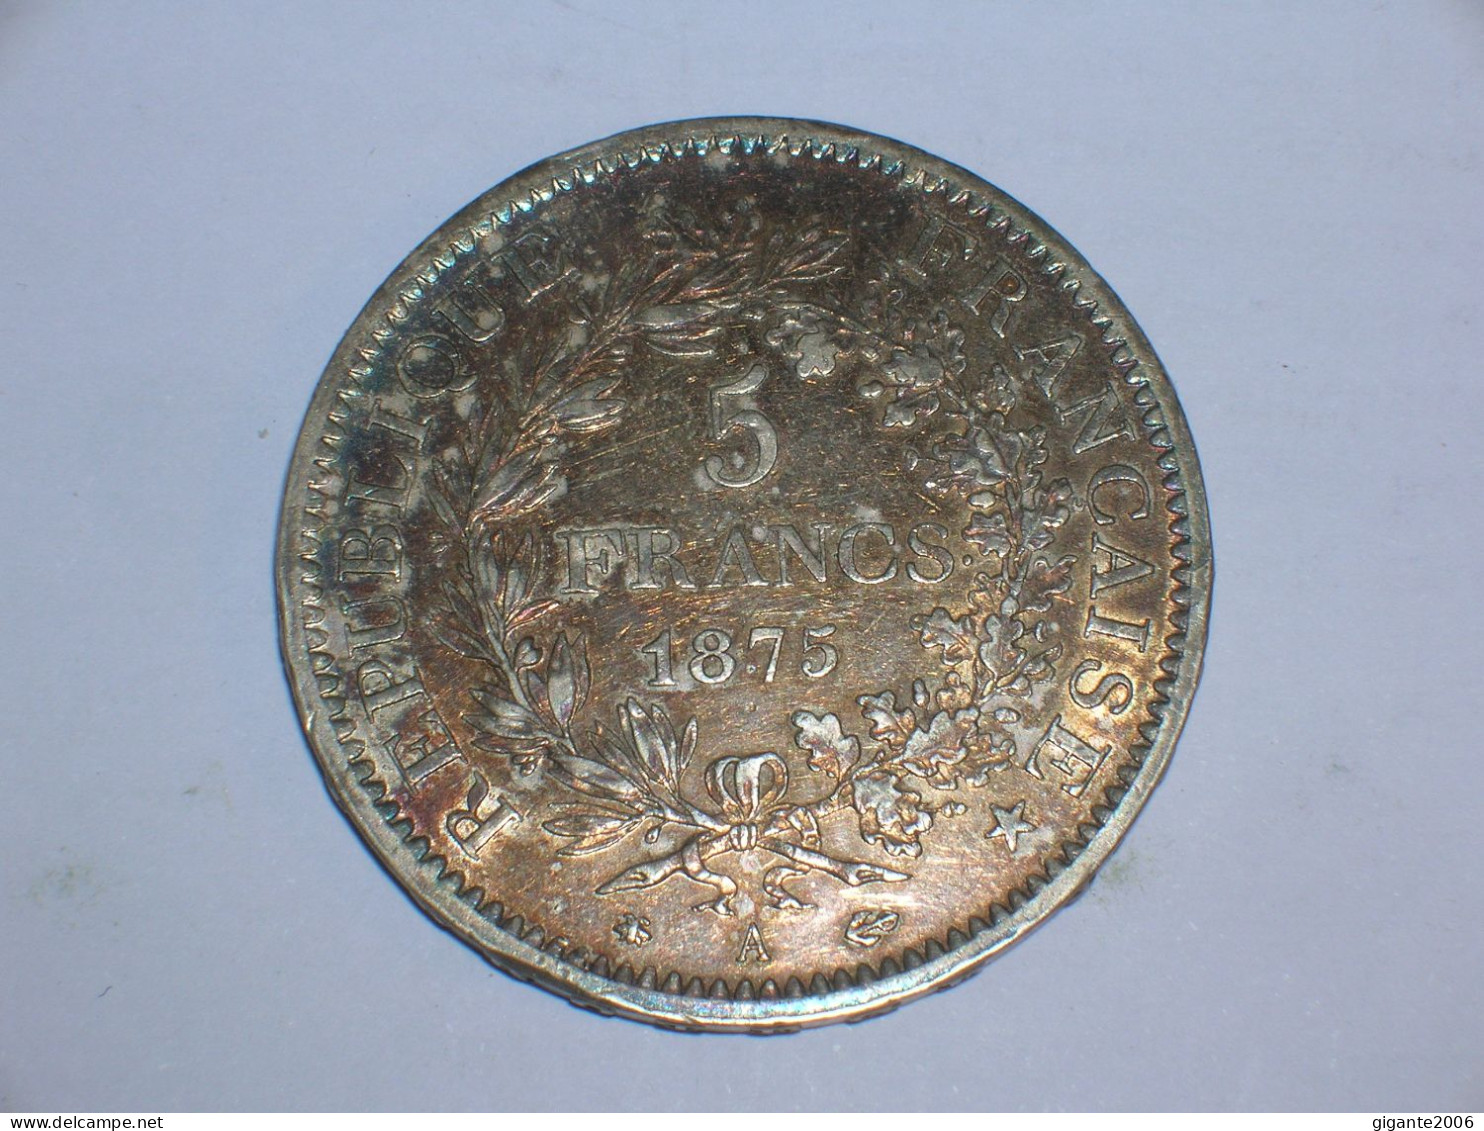 FRANCIA 5 FRANCOS 1875 A (14003) - 5 Francs